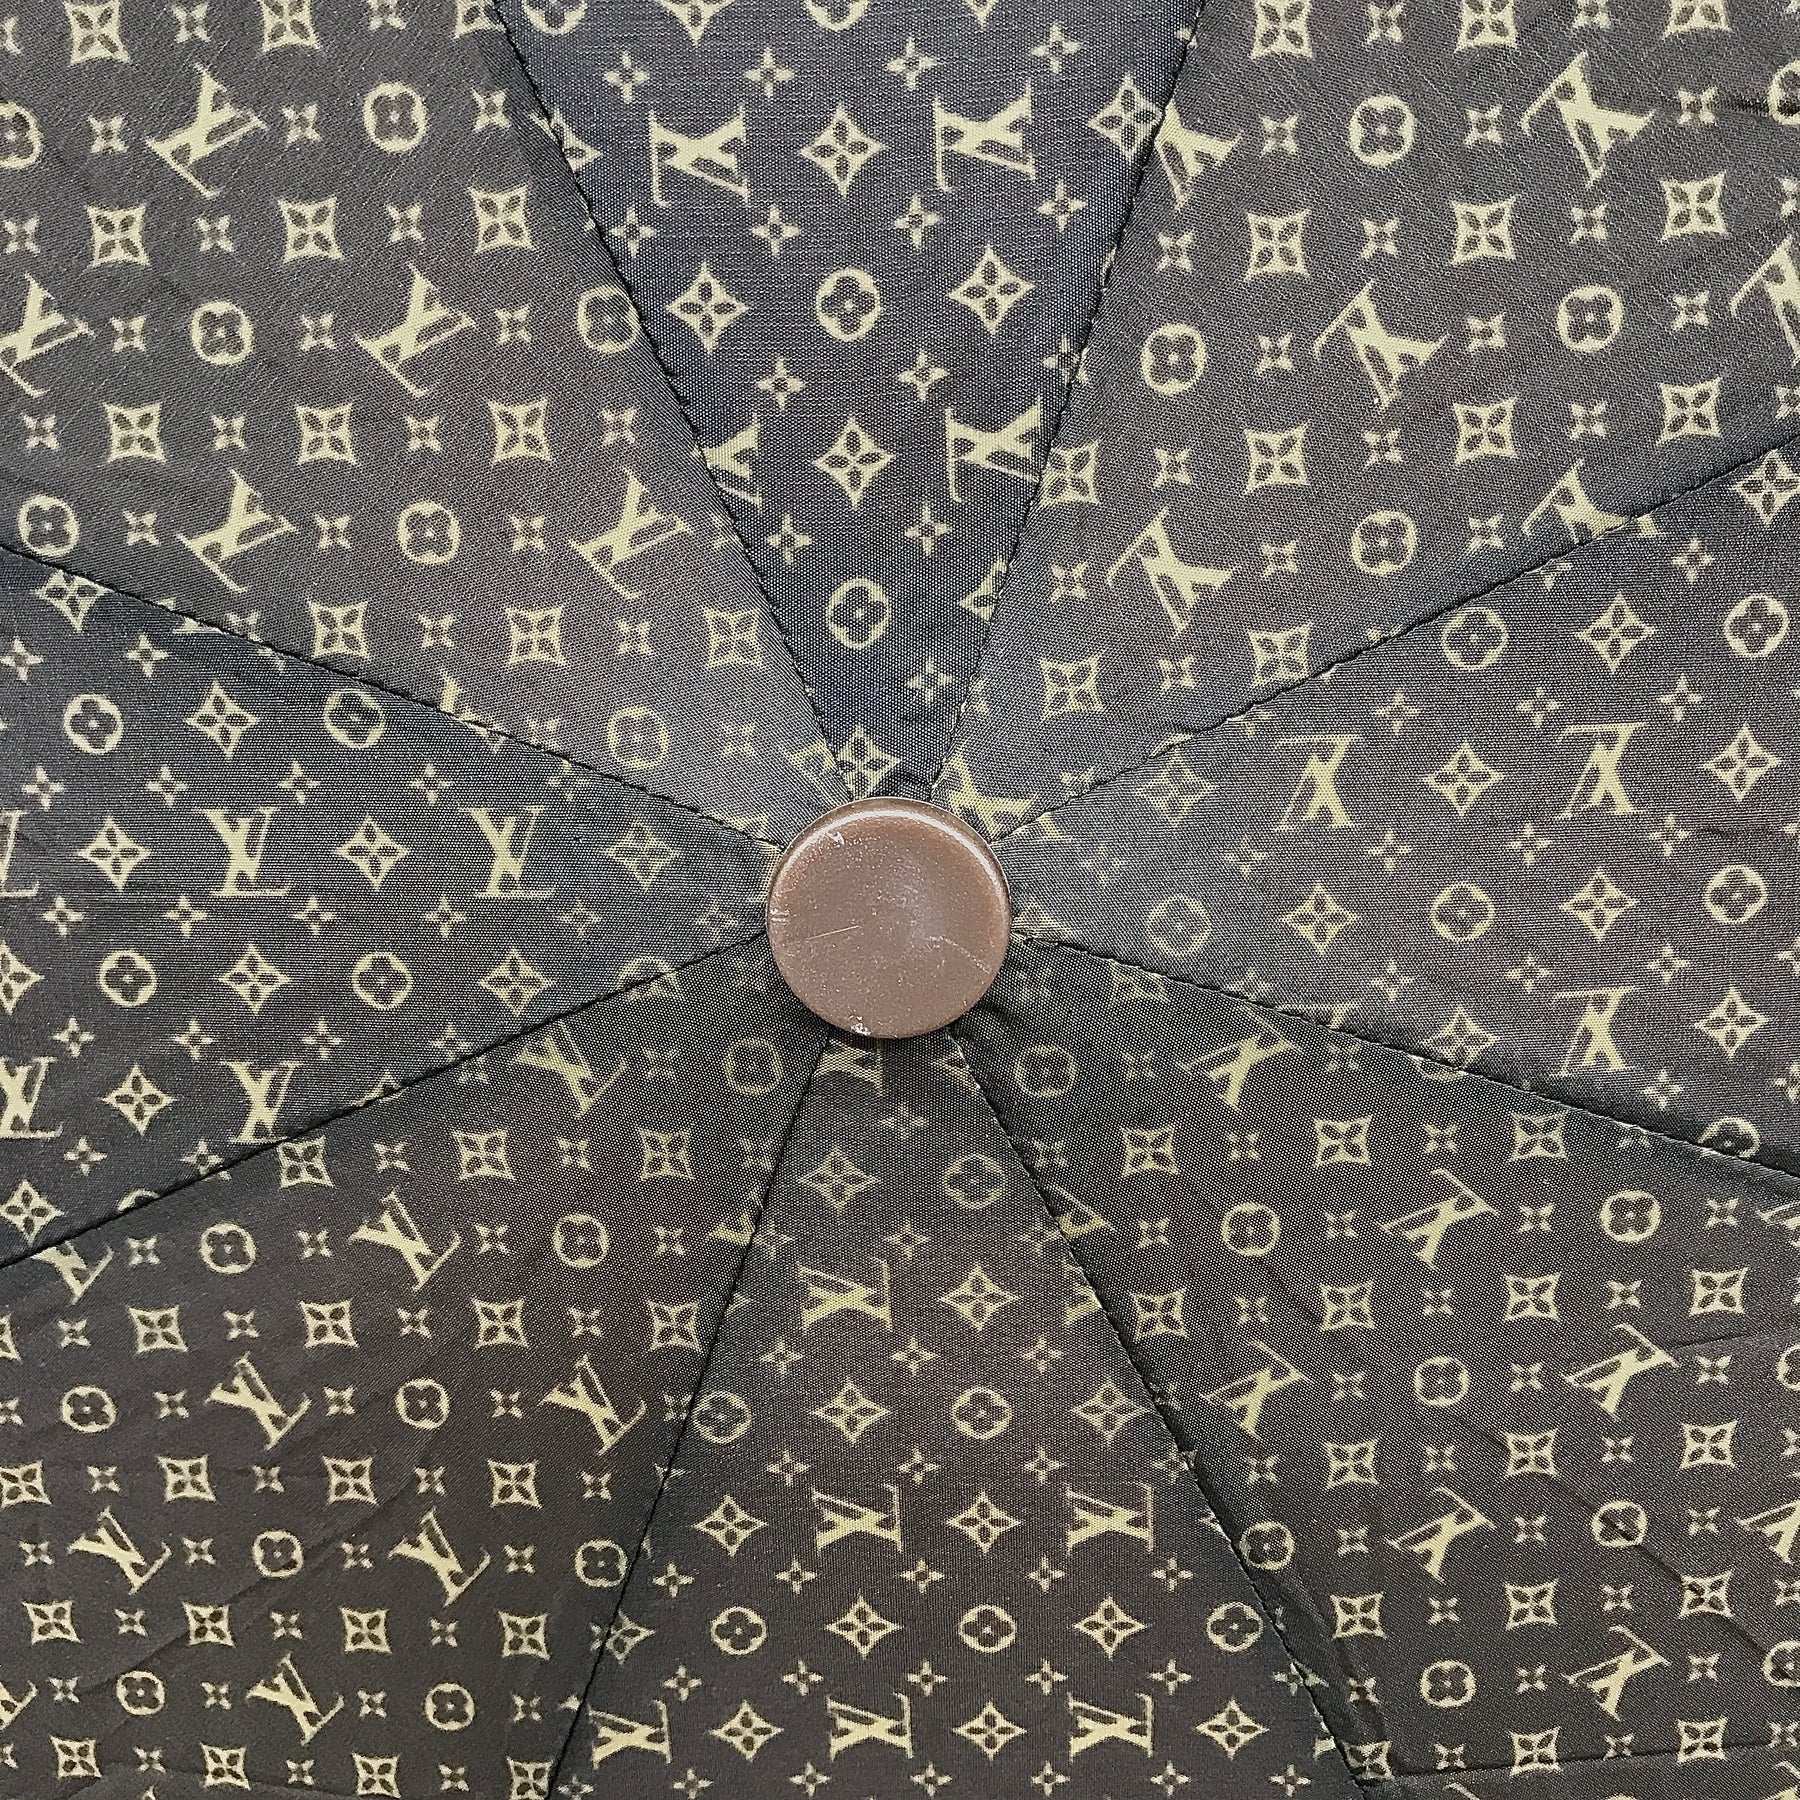 Vintage Louis Vuitton Umbrella – Clothes Heaven Since 1983